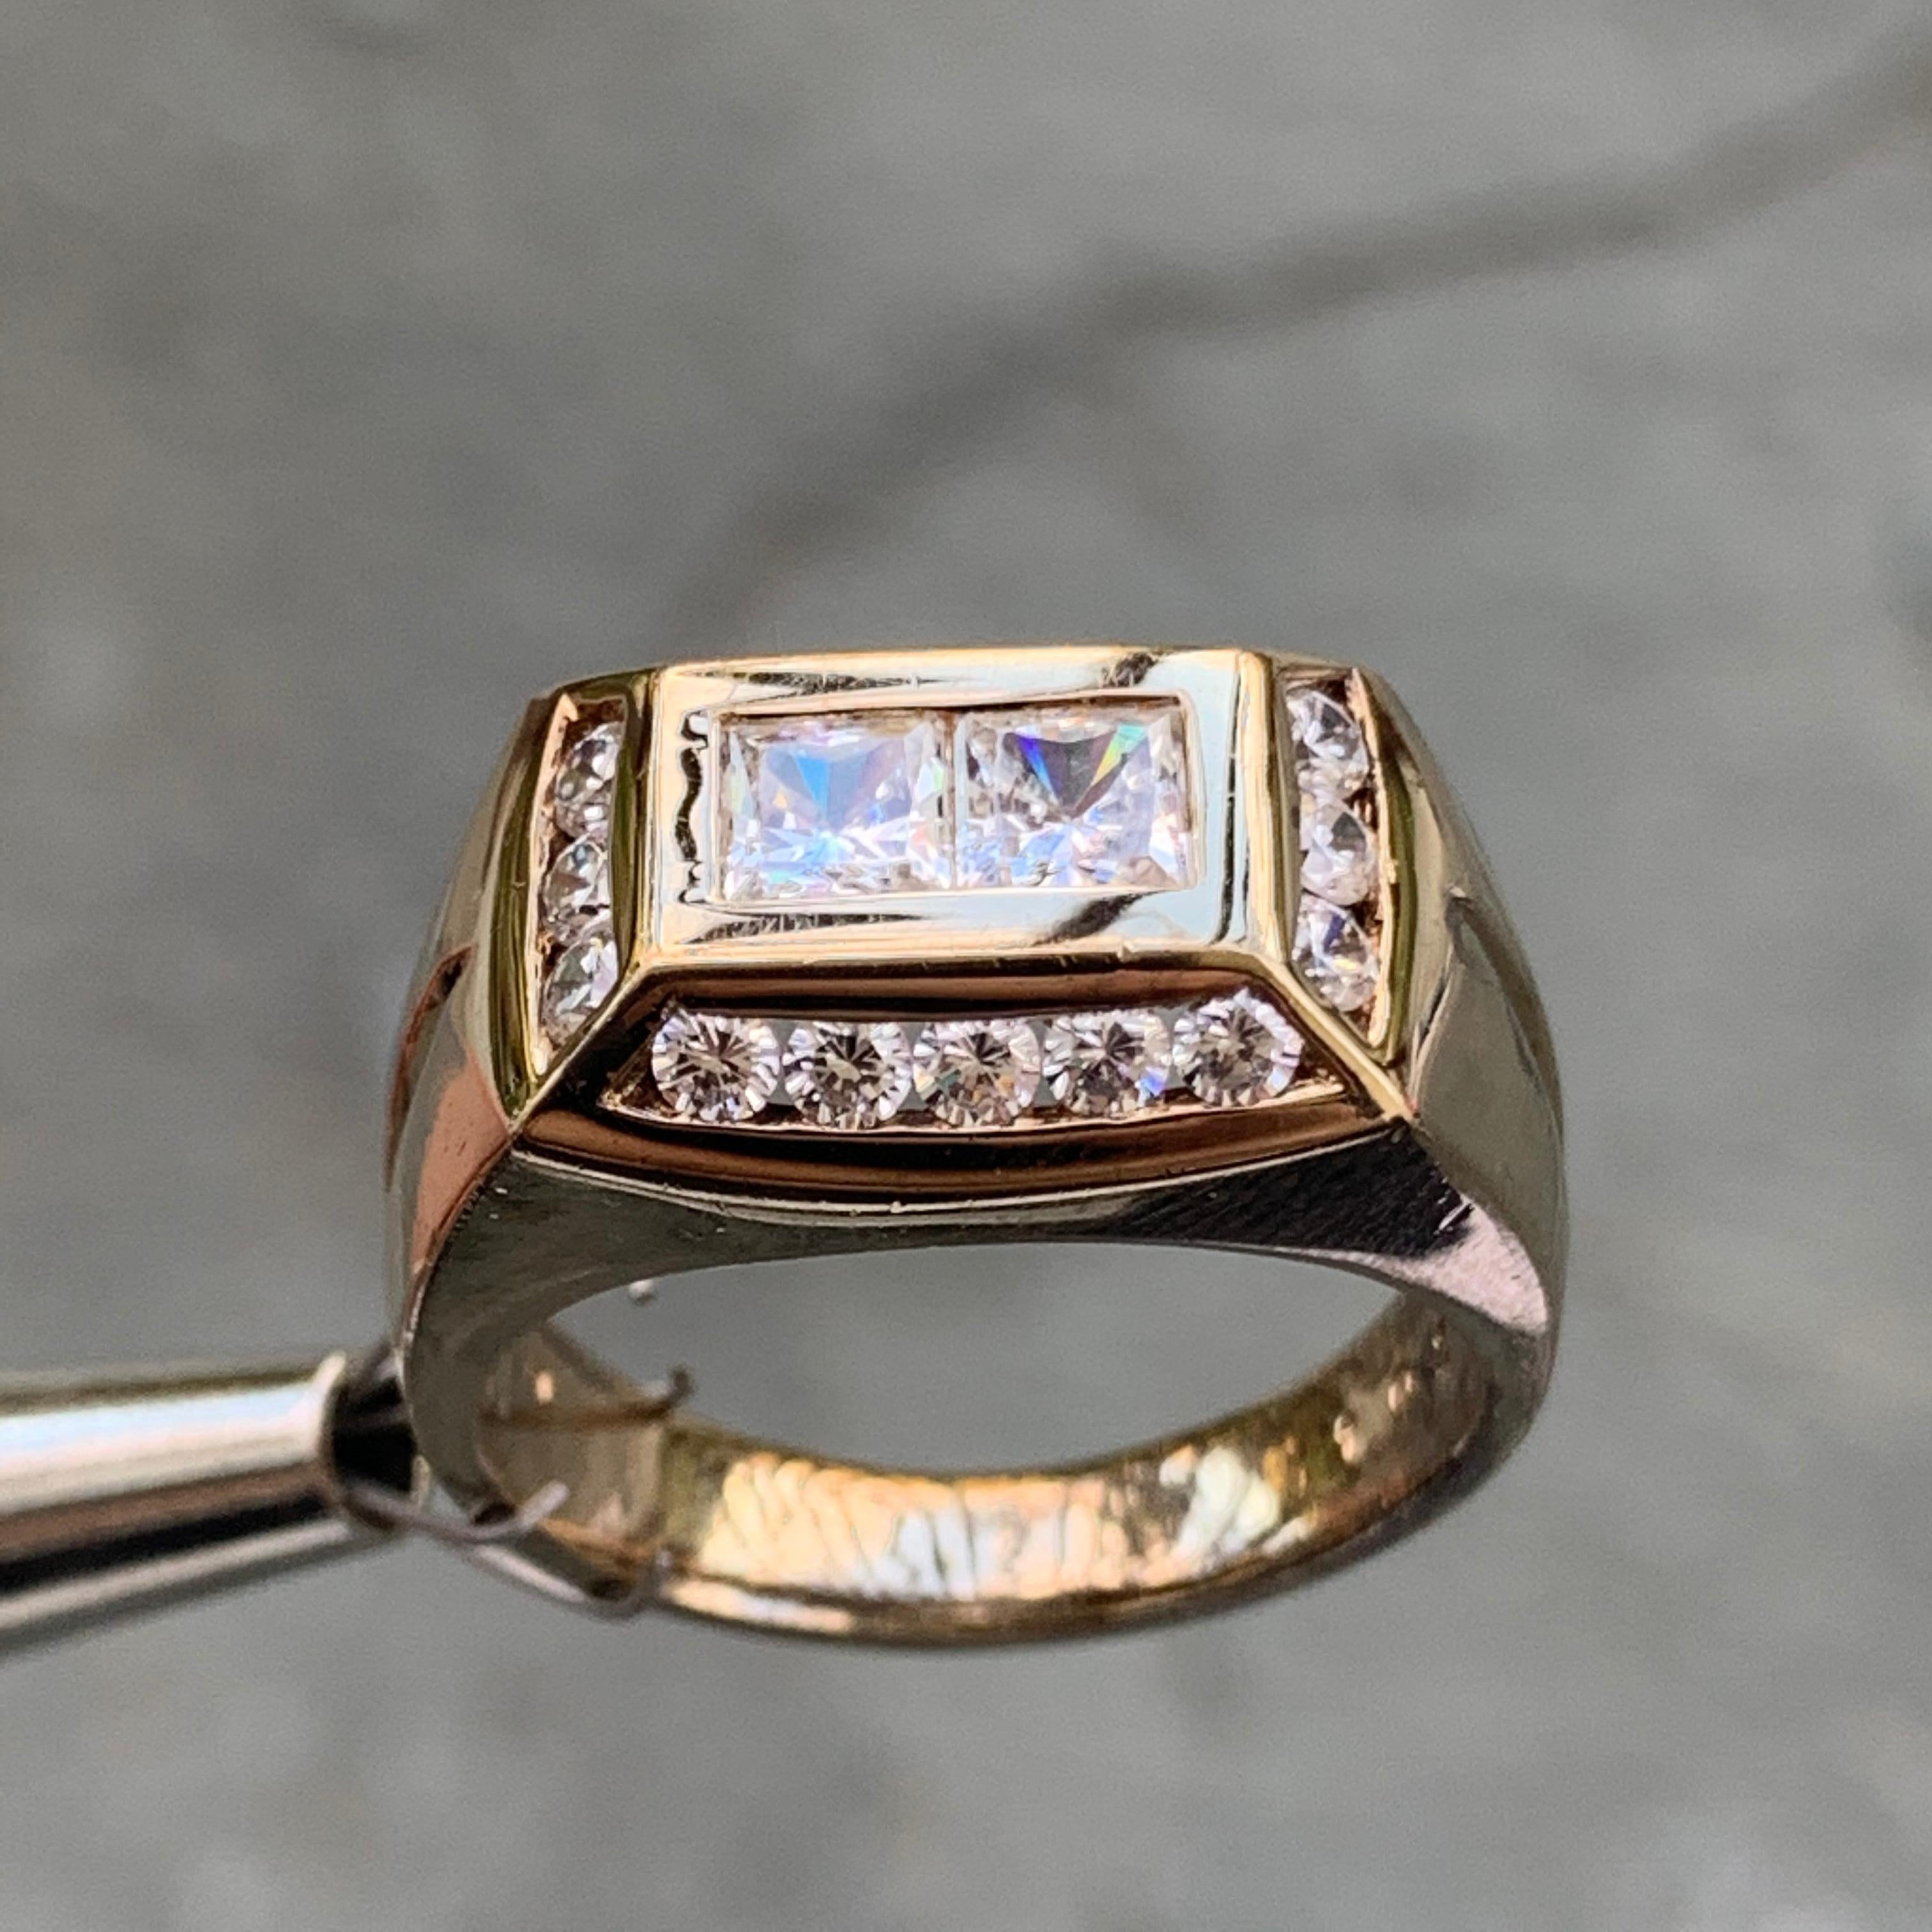 Retro 1.2 Carat TW Men's Diamond Ring / Wedding Ring / Band, 14 Karat Gold Heavy